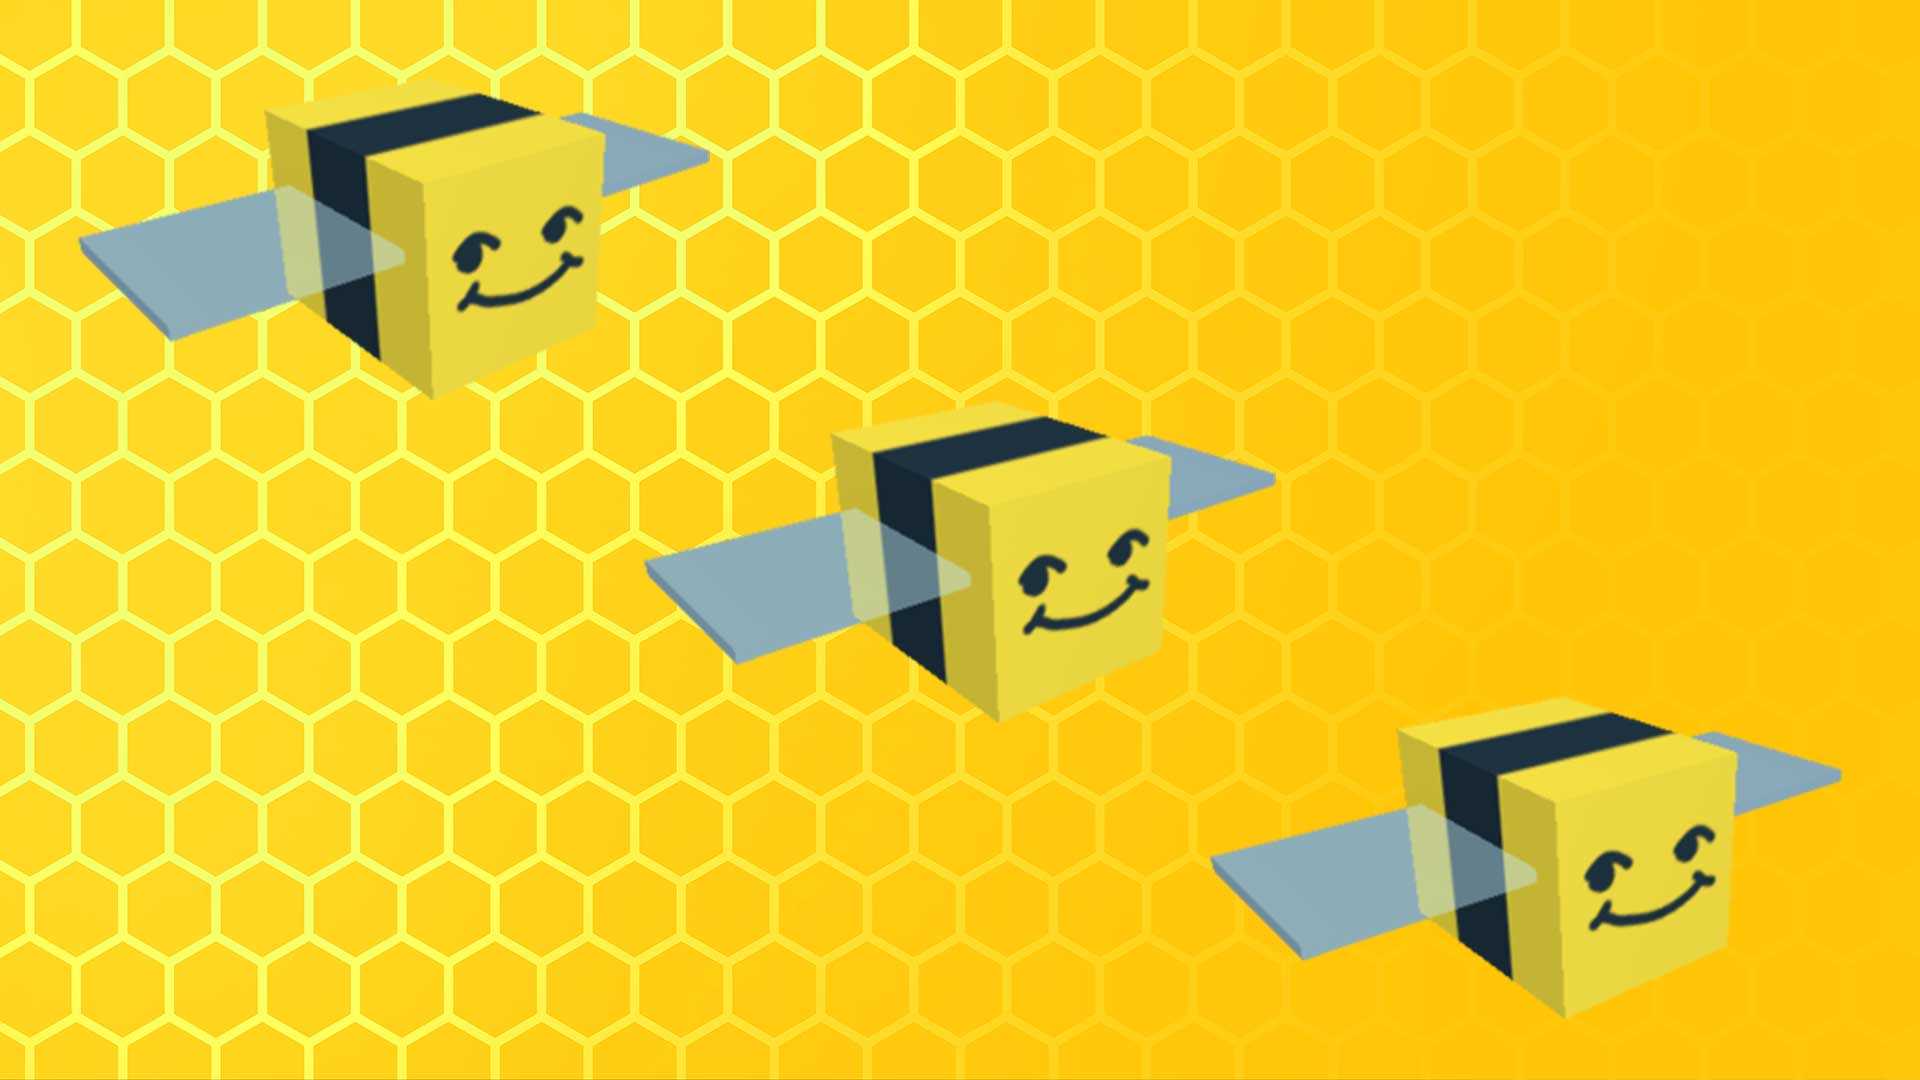 Bee Swarm игра. Би сварм симулятор пчелы. Симулятор пчёл РОБЛОКС. РОБЛОКС Bee Swarm. Swarm simulator роблокс